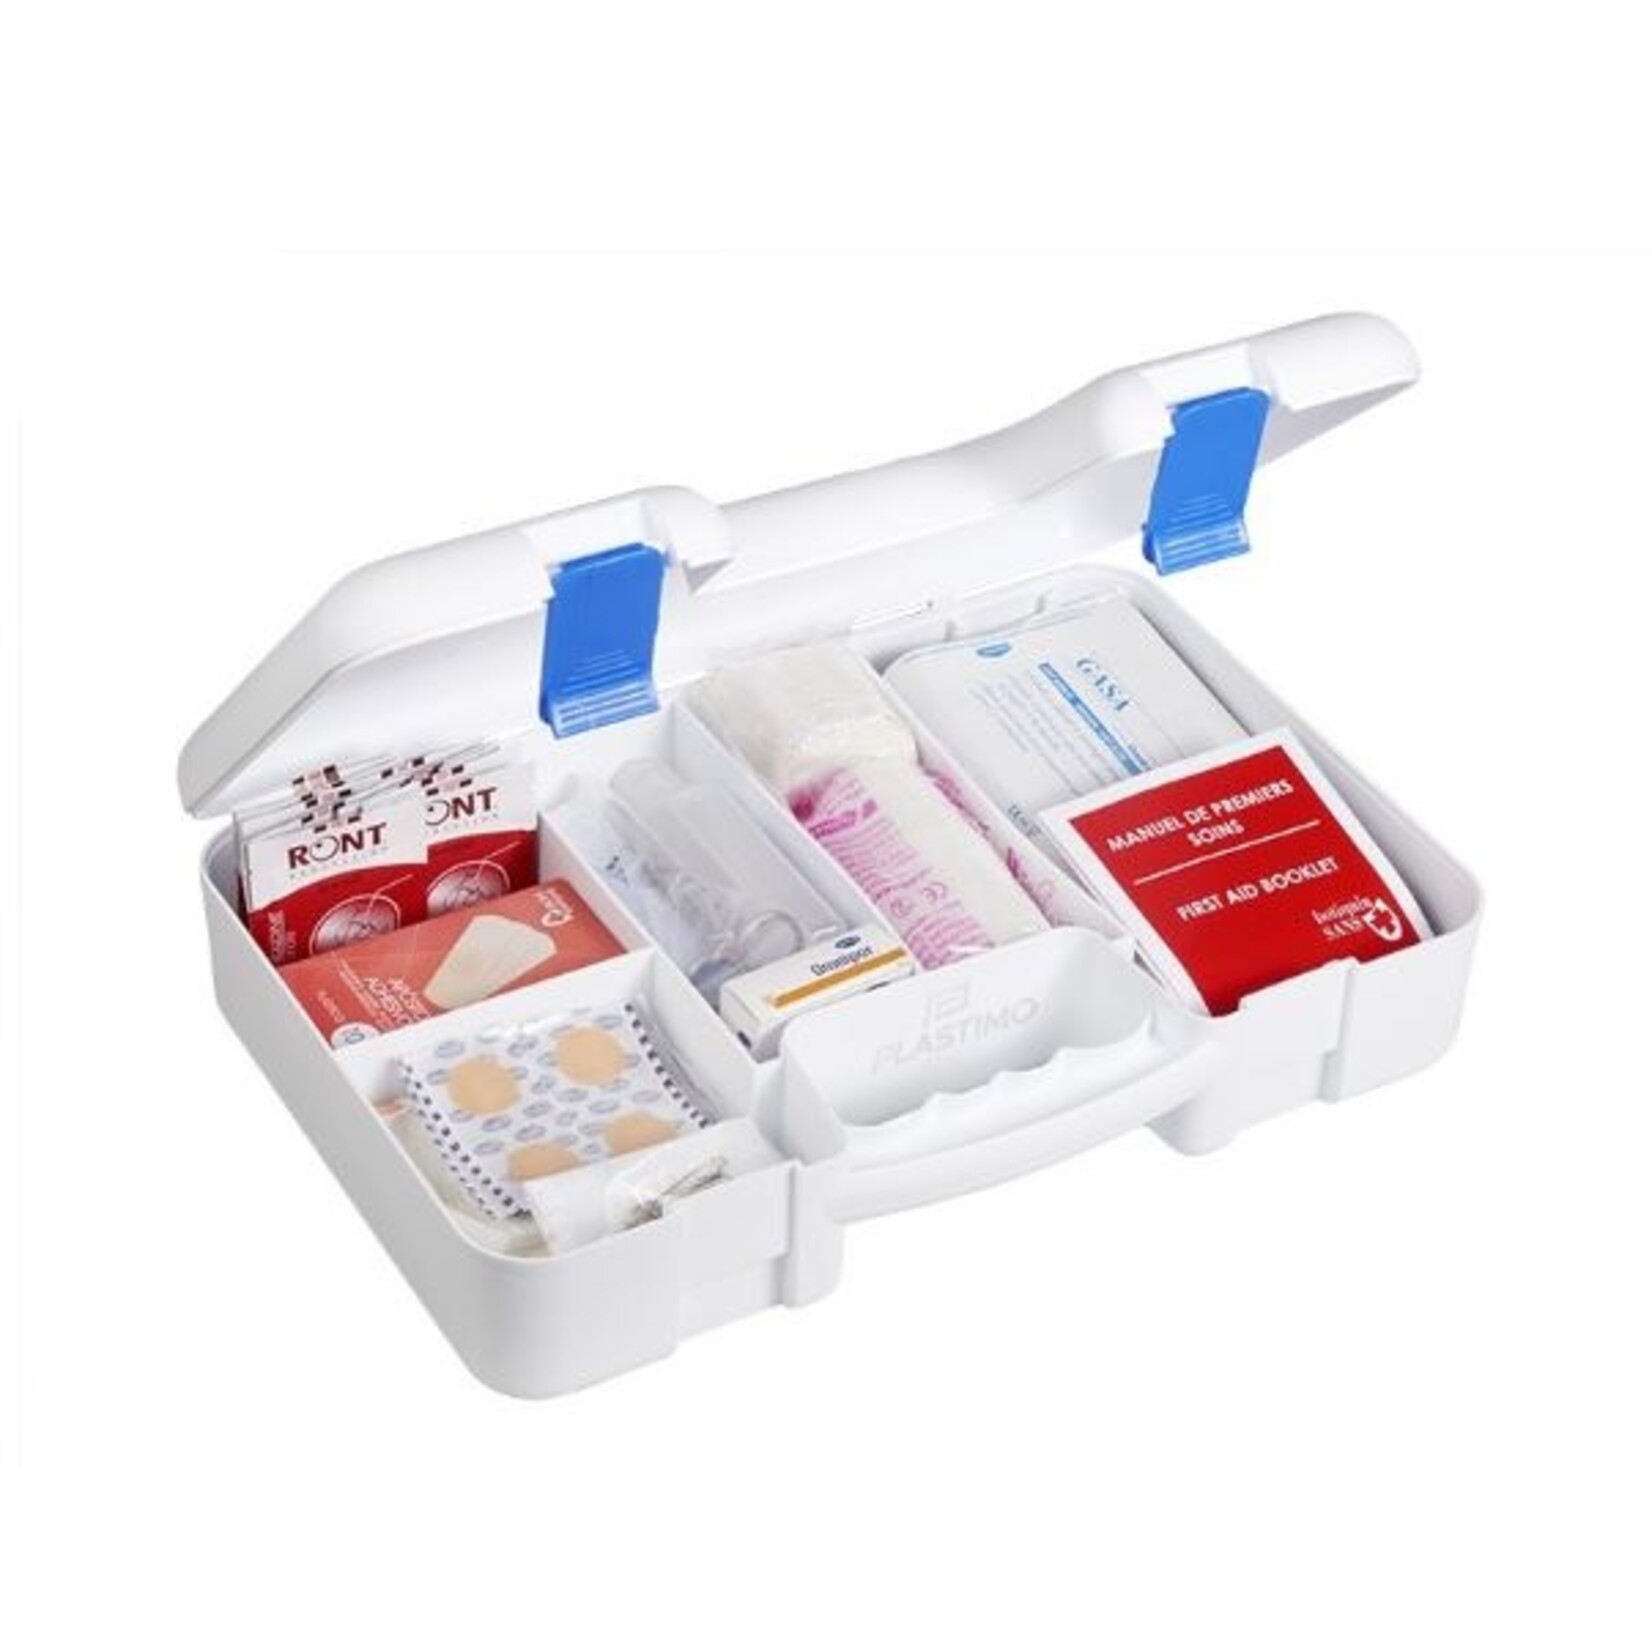 Plastimo First aid kit ocean